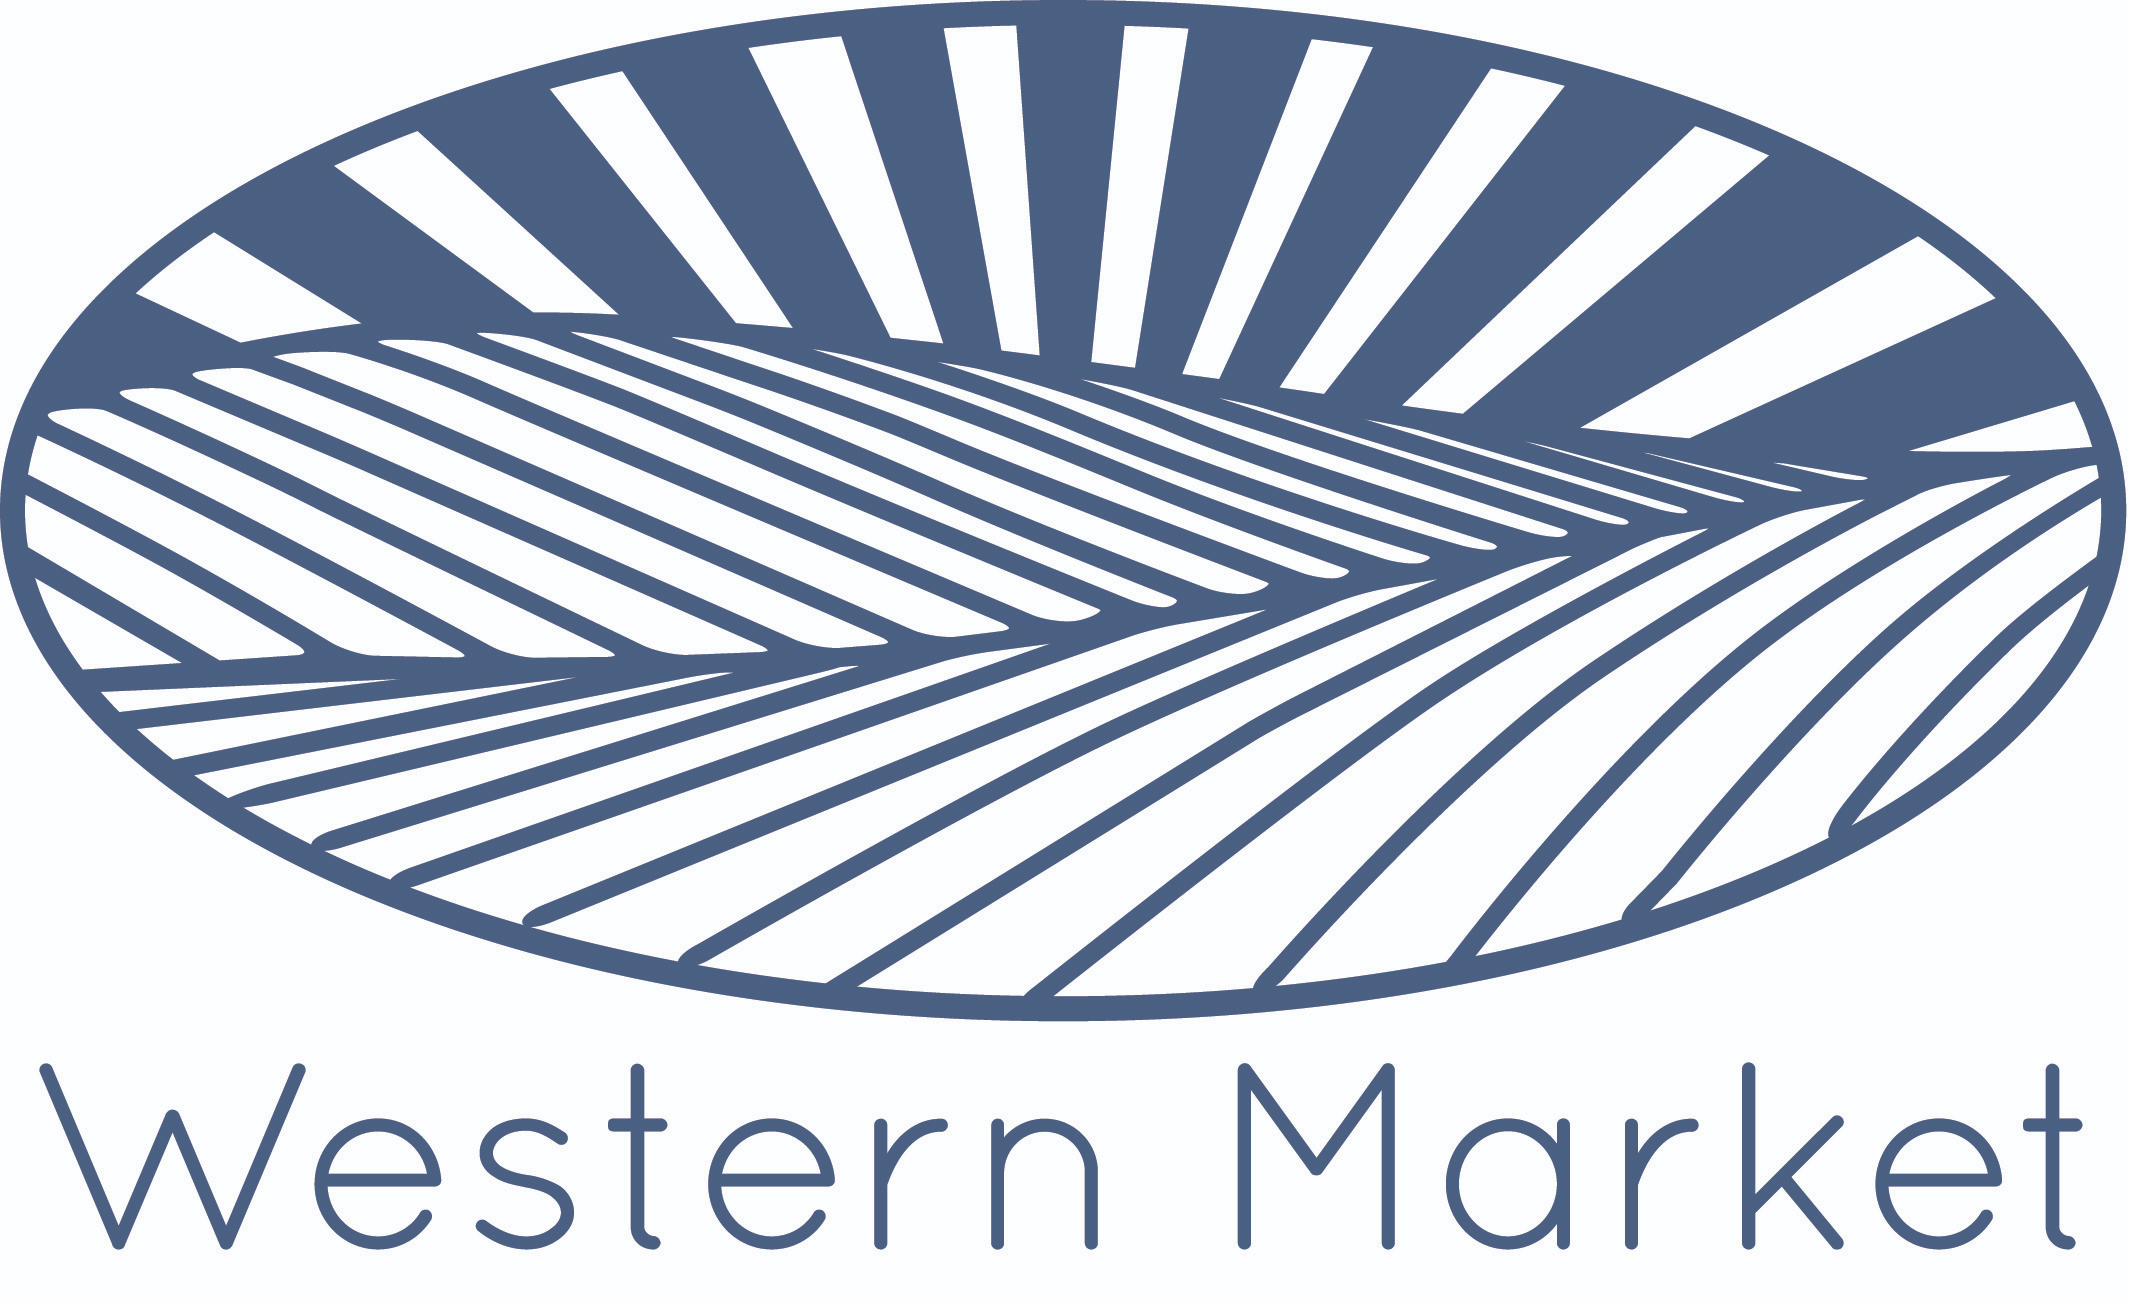 Western Market logo